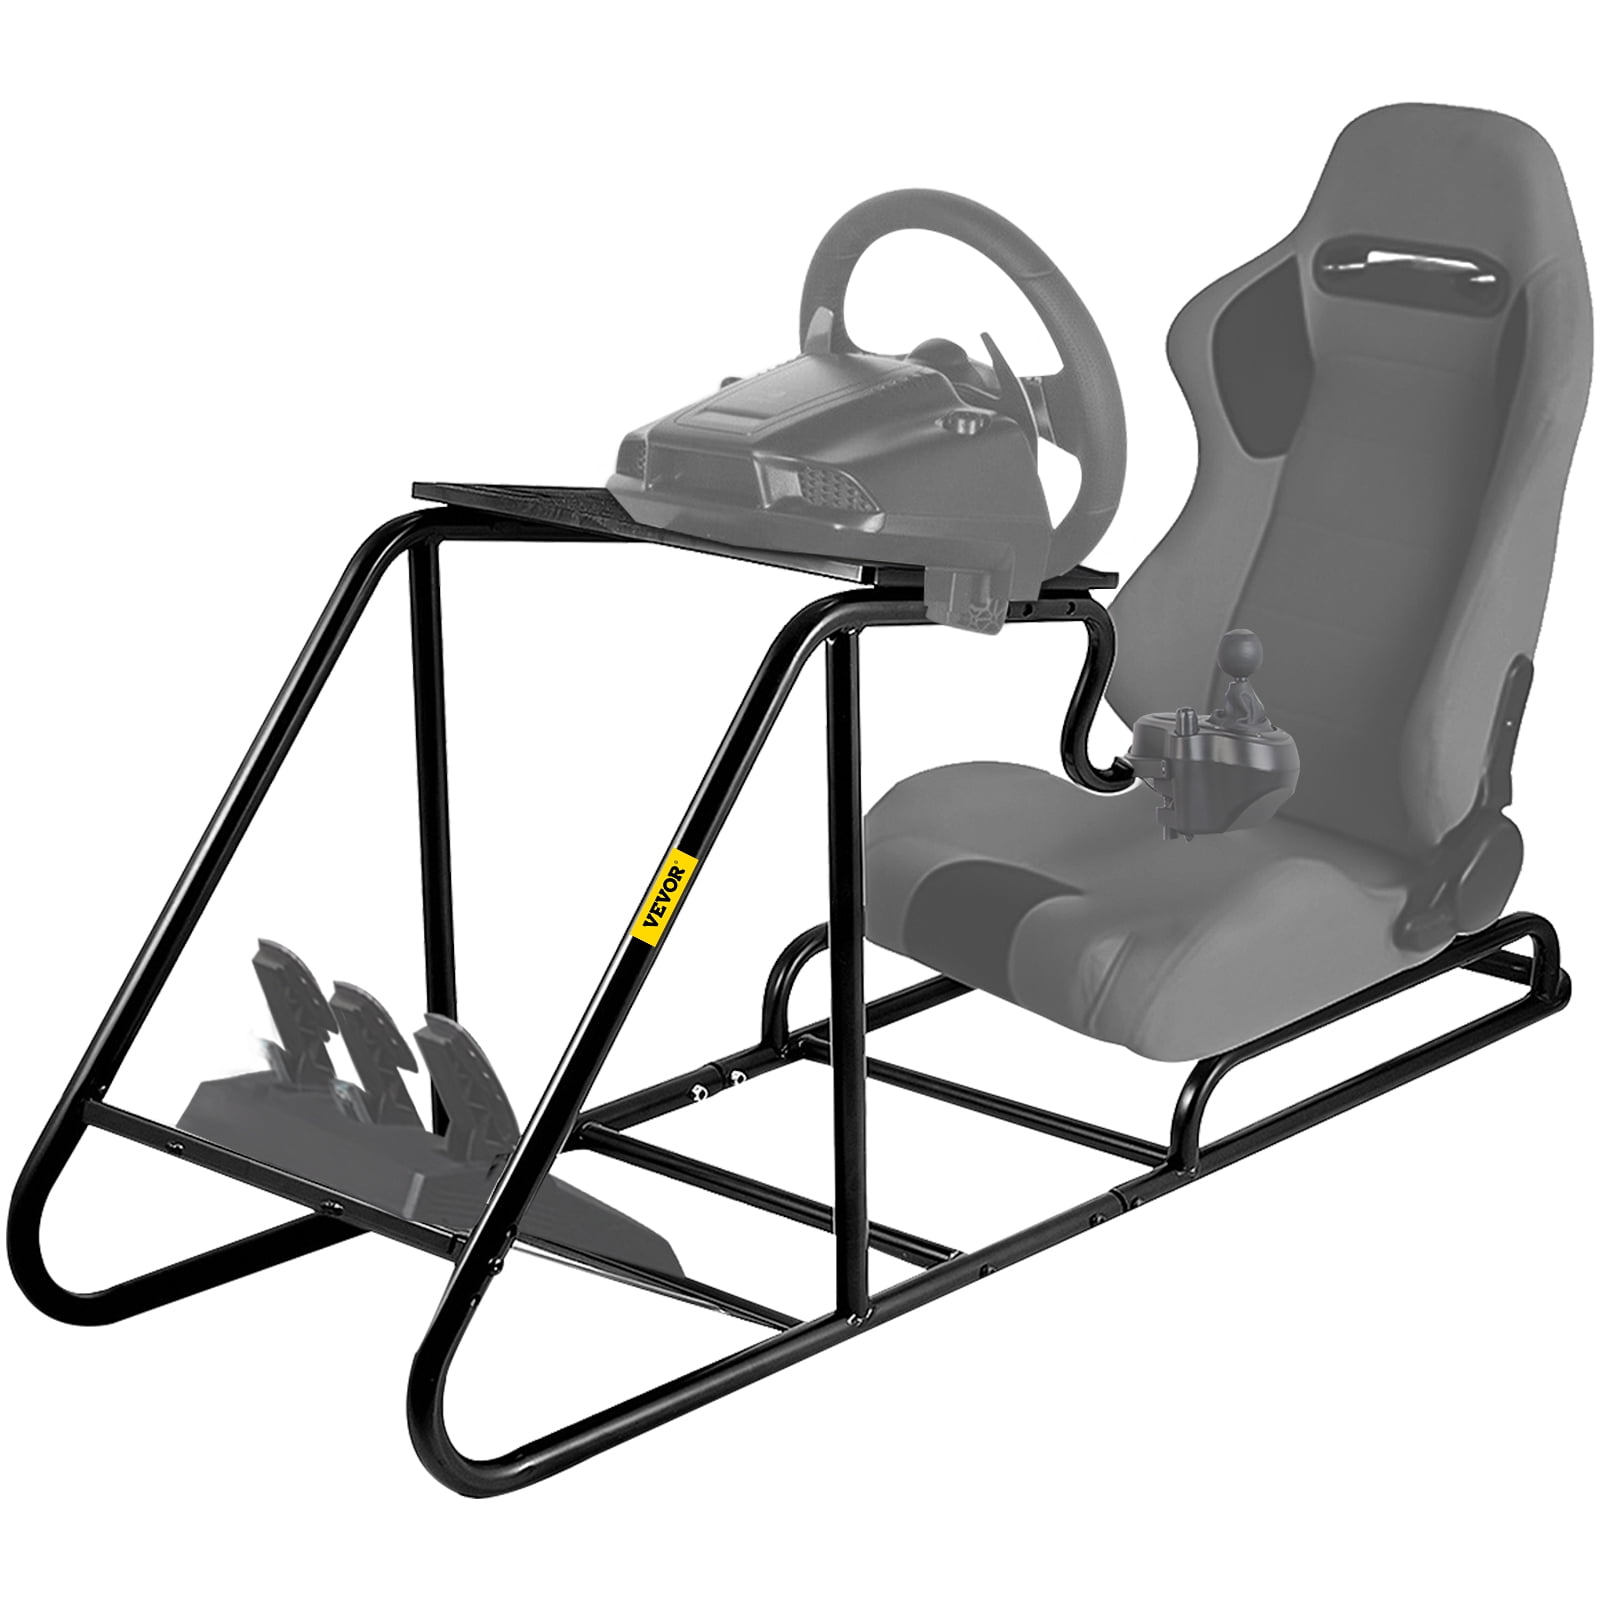 お礼や感謝伝えるプチギフト Hottoby Racing Steering Wheel Stand with Pulley Chair Fixing  Adjustable for Fanatec Thrustmaster Logitech G25 G27 G920 Gaming Simulator  Driving